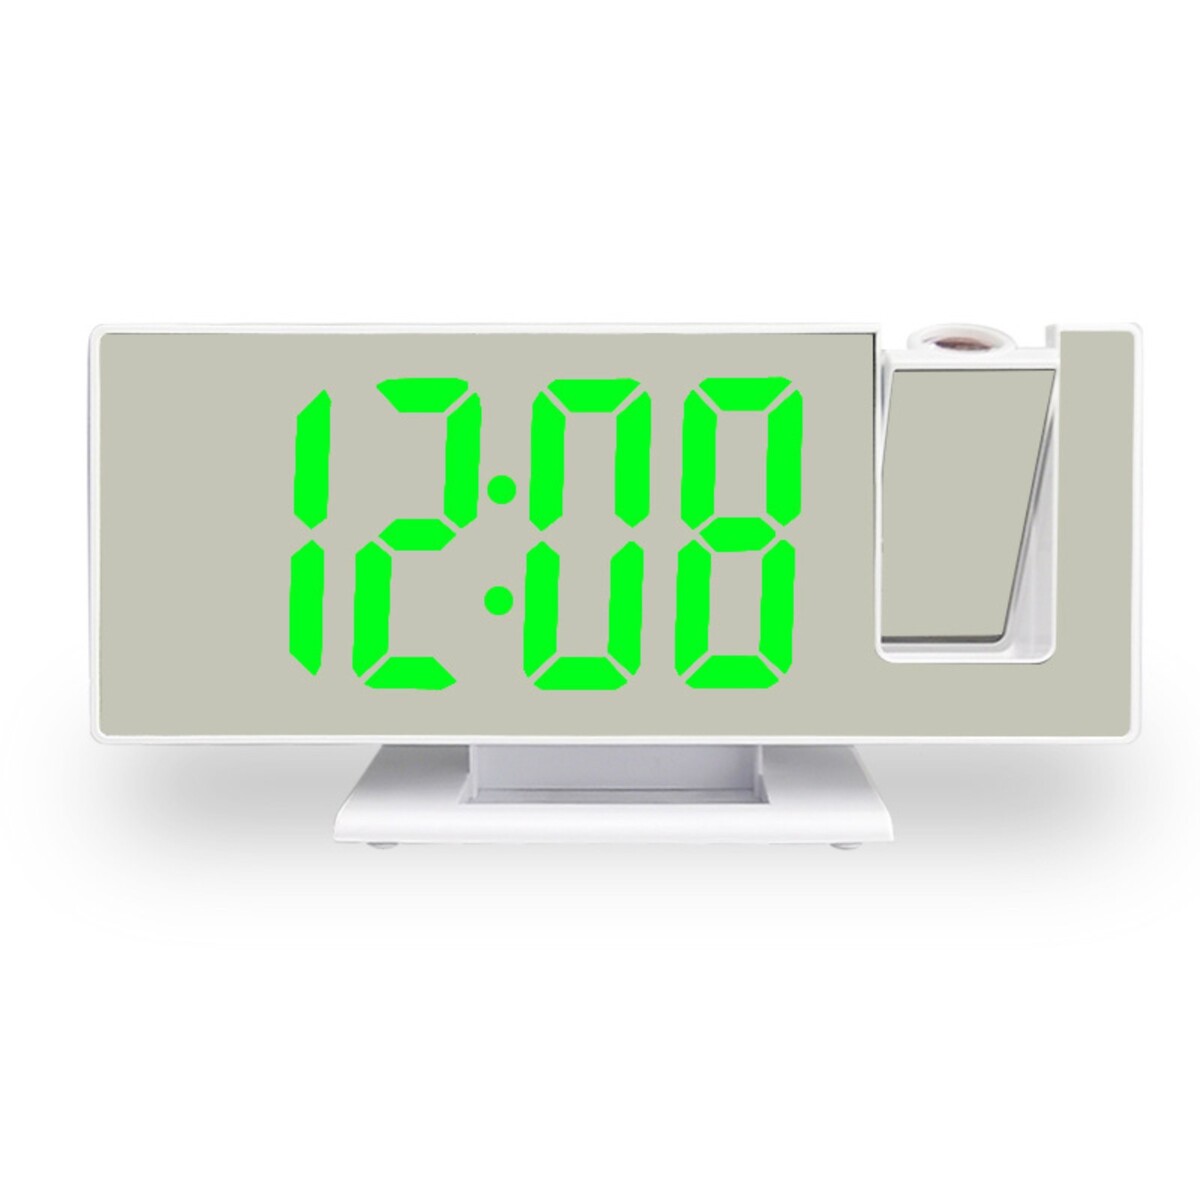 Часы - будильник электронные настольные с проекцией на потолок, термометром, календарем, usb 9197734 часы электронные настольные с метеостанцией с календарем и будильником 7 7 х 8 6 см